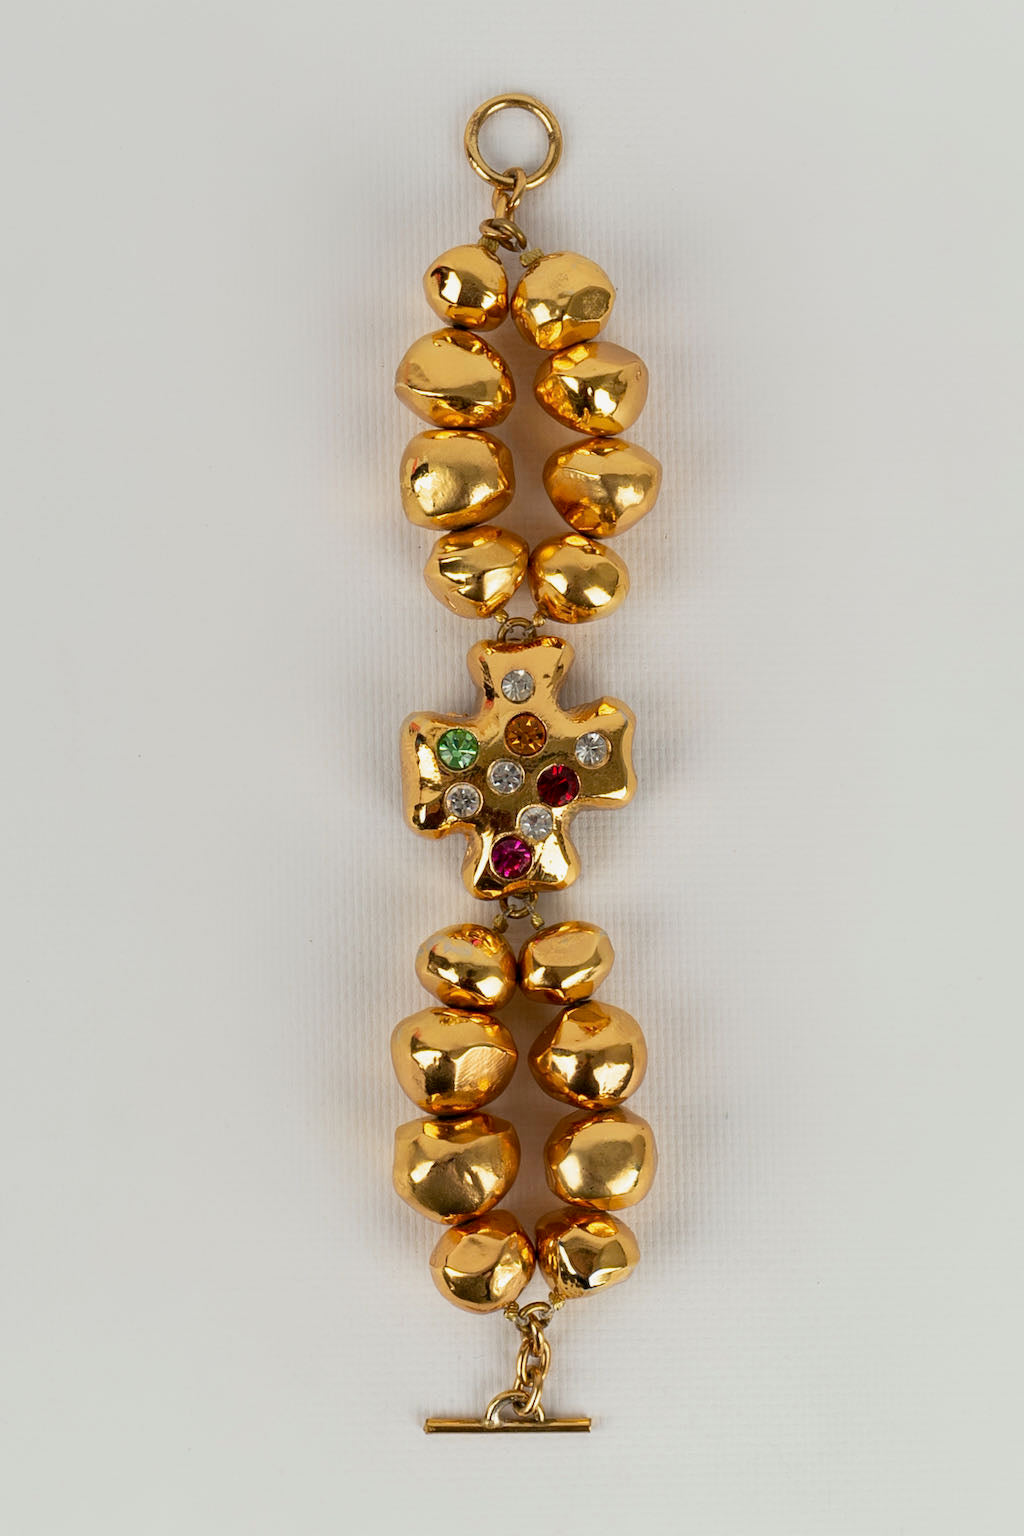 3 Line Rudraksha Decorative Design Best Quality Gold Plated Bracelet -  Style B357 at Rs 600.00 | Rudraksha Bracelet | ID: 25945007988